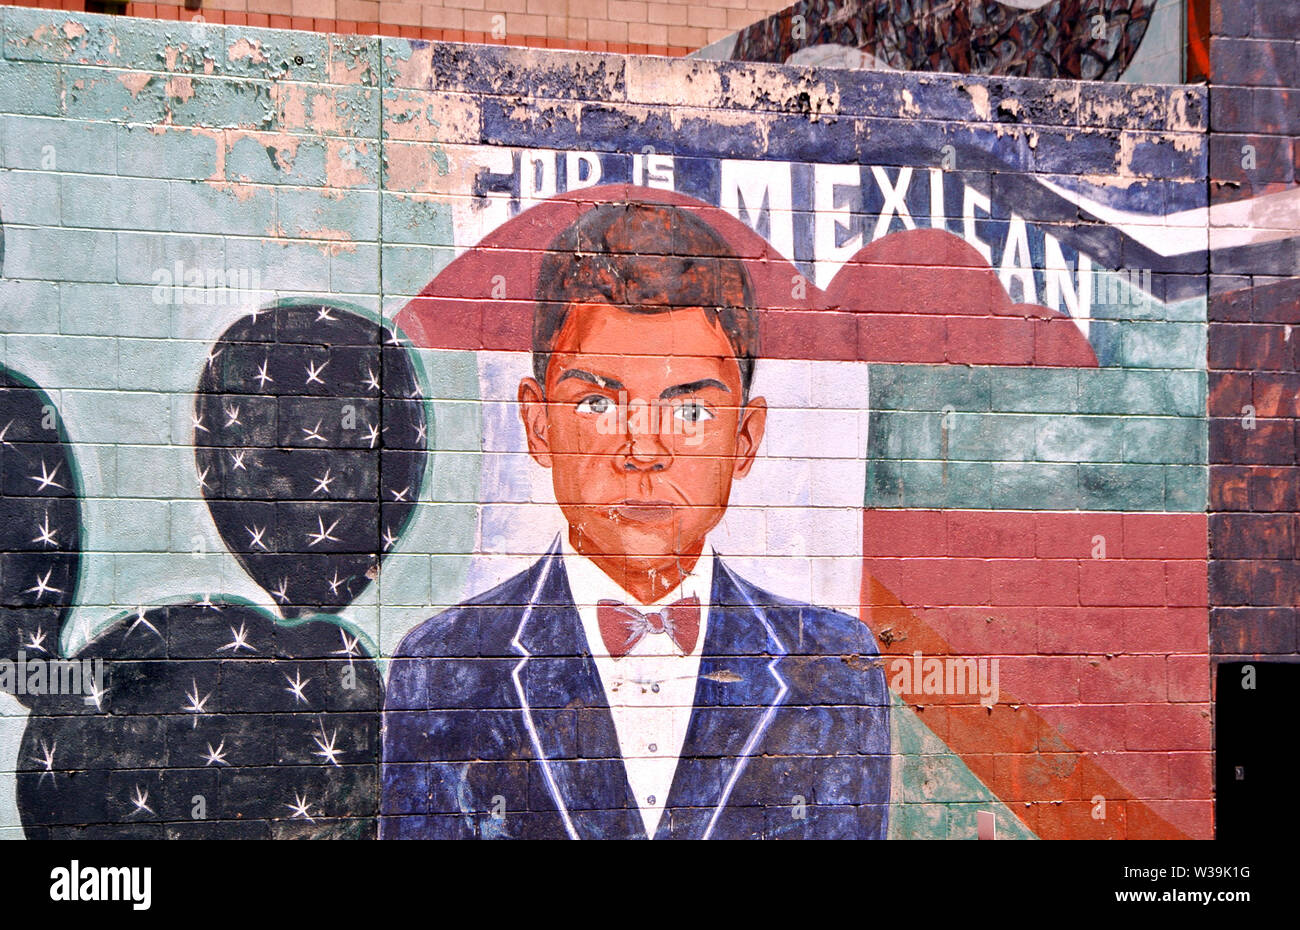 Peinture murale au centre-ville de El paso arizona dieu est mexicaine Banque D'Images